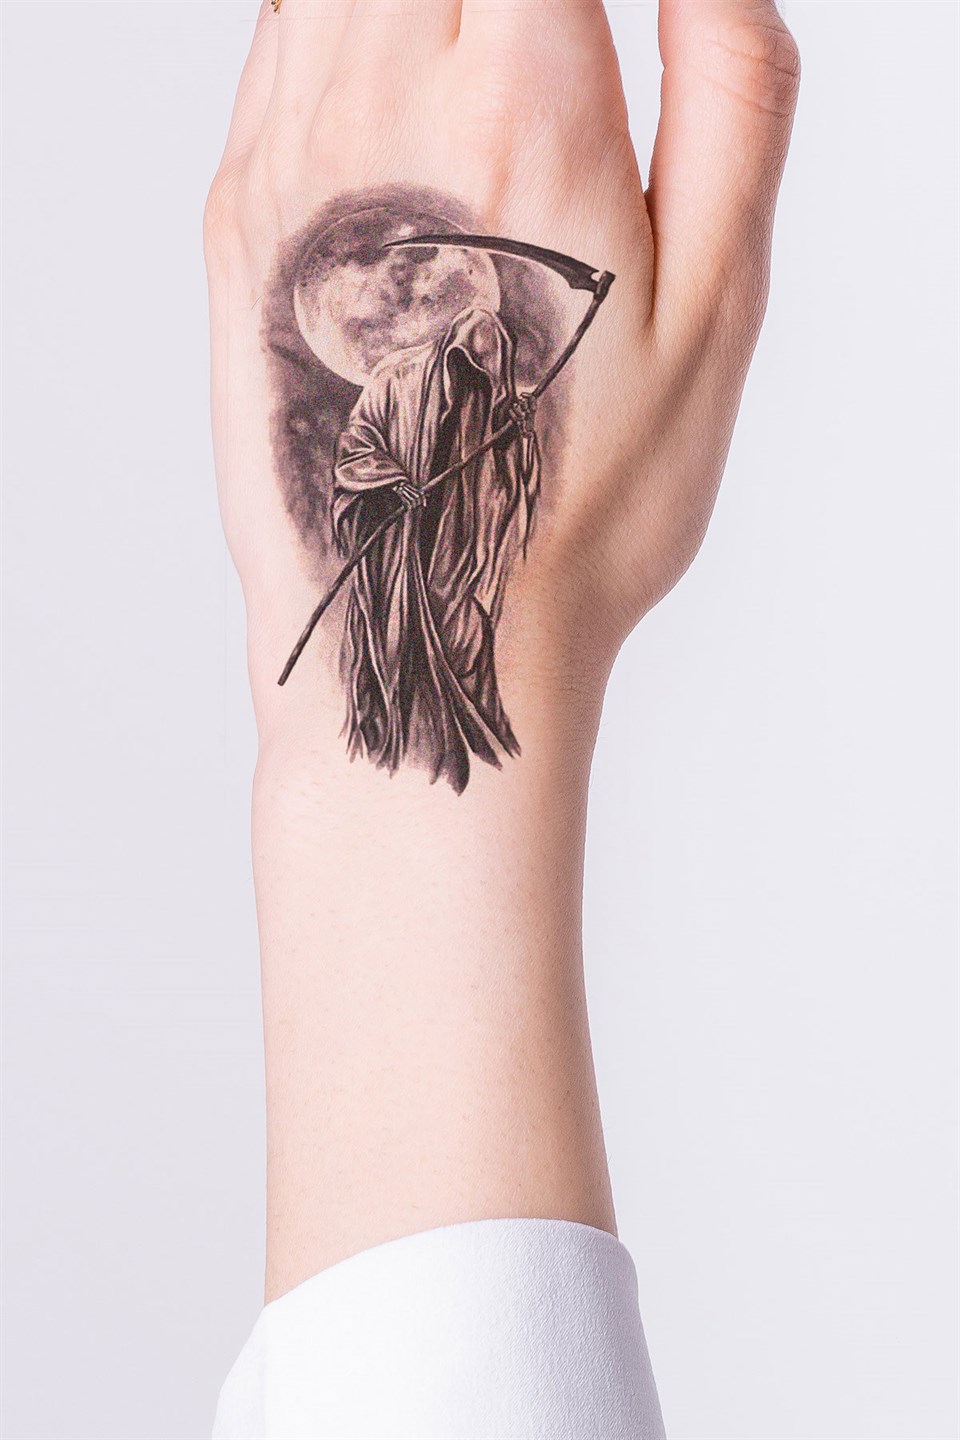 Full Single Needle Tattoo Session Winged Statue of Samothrace  YouTube